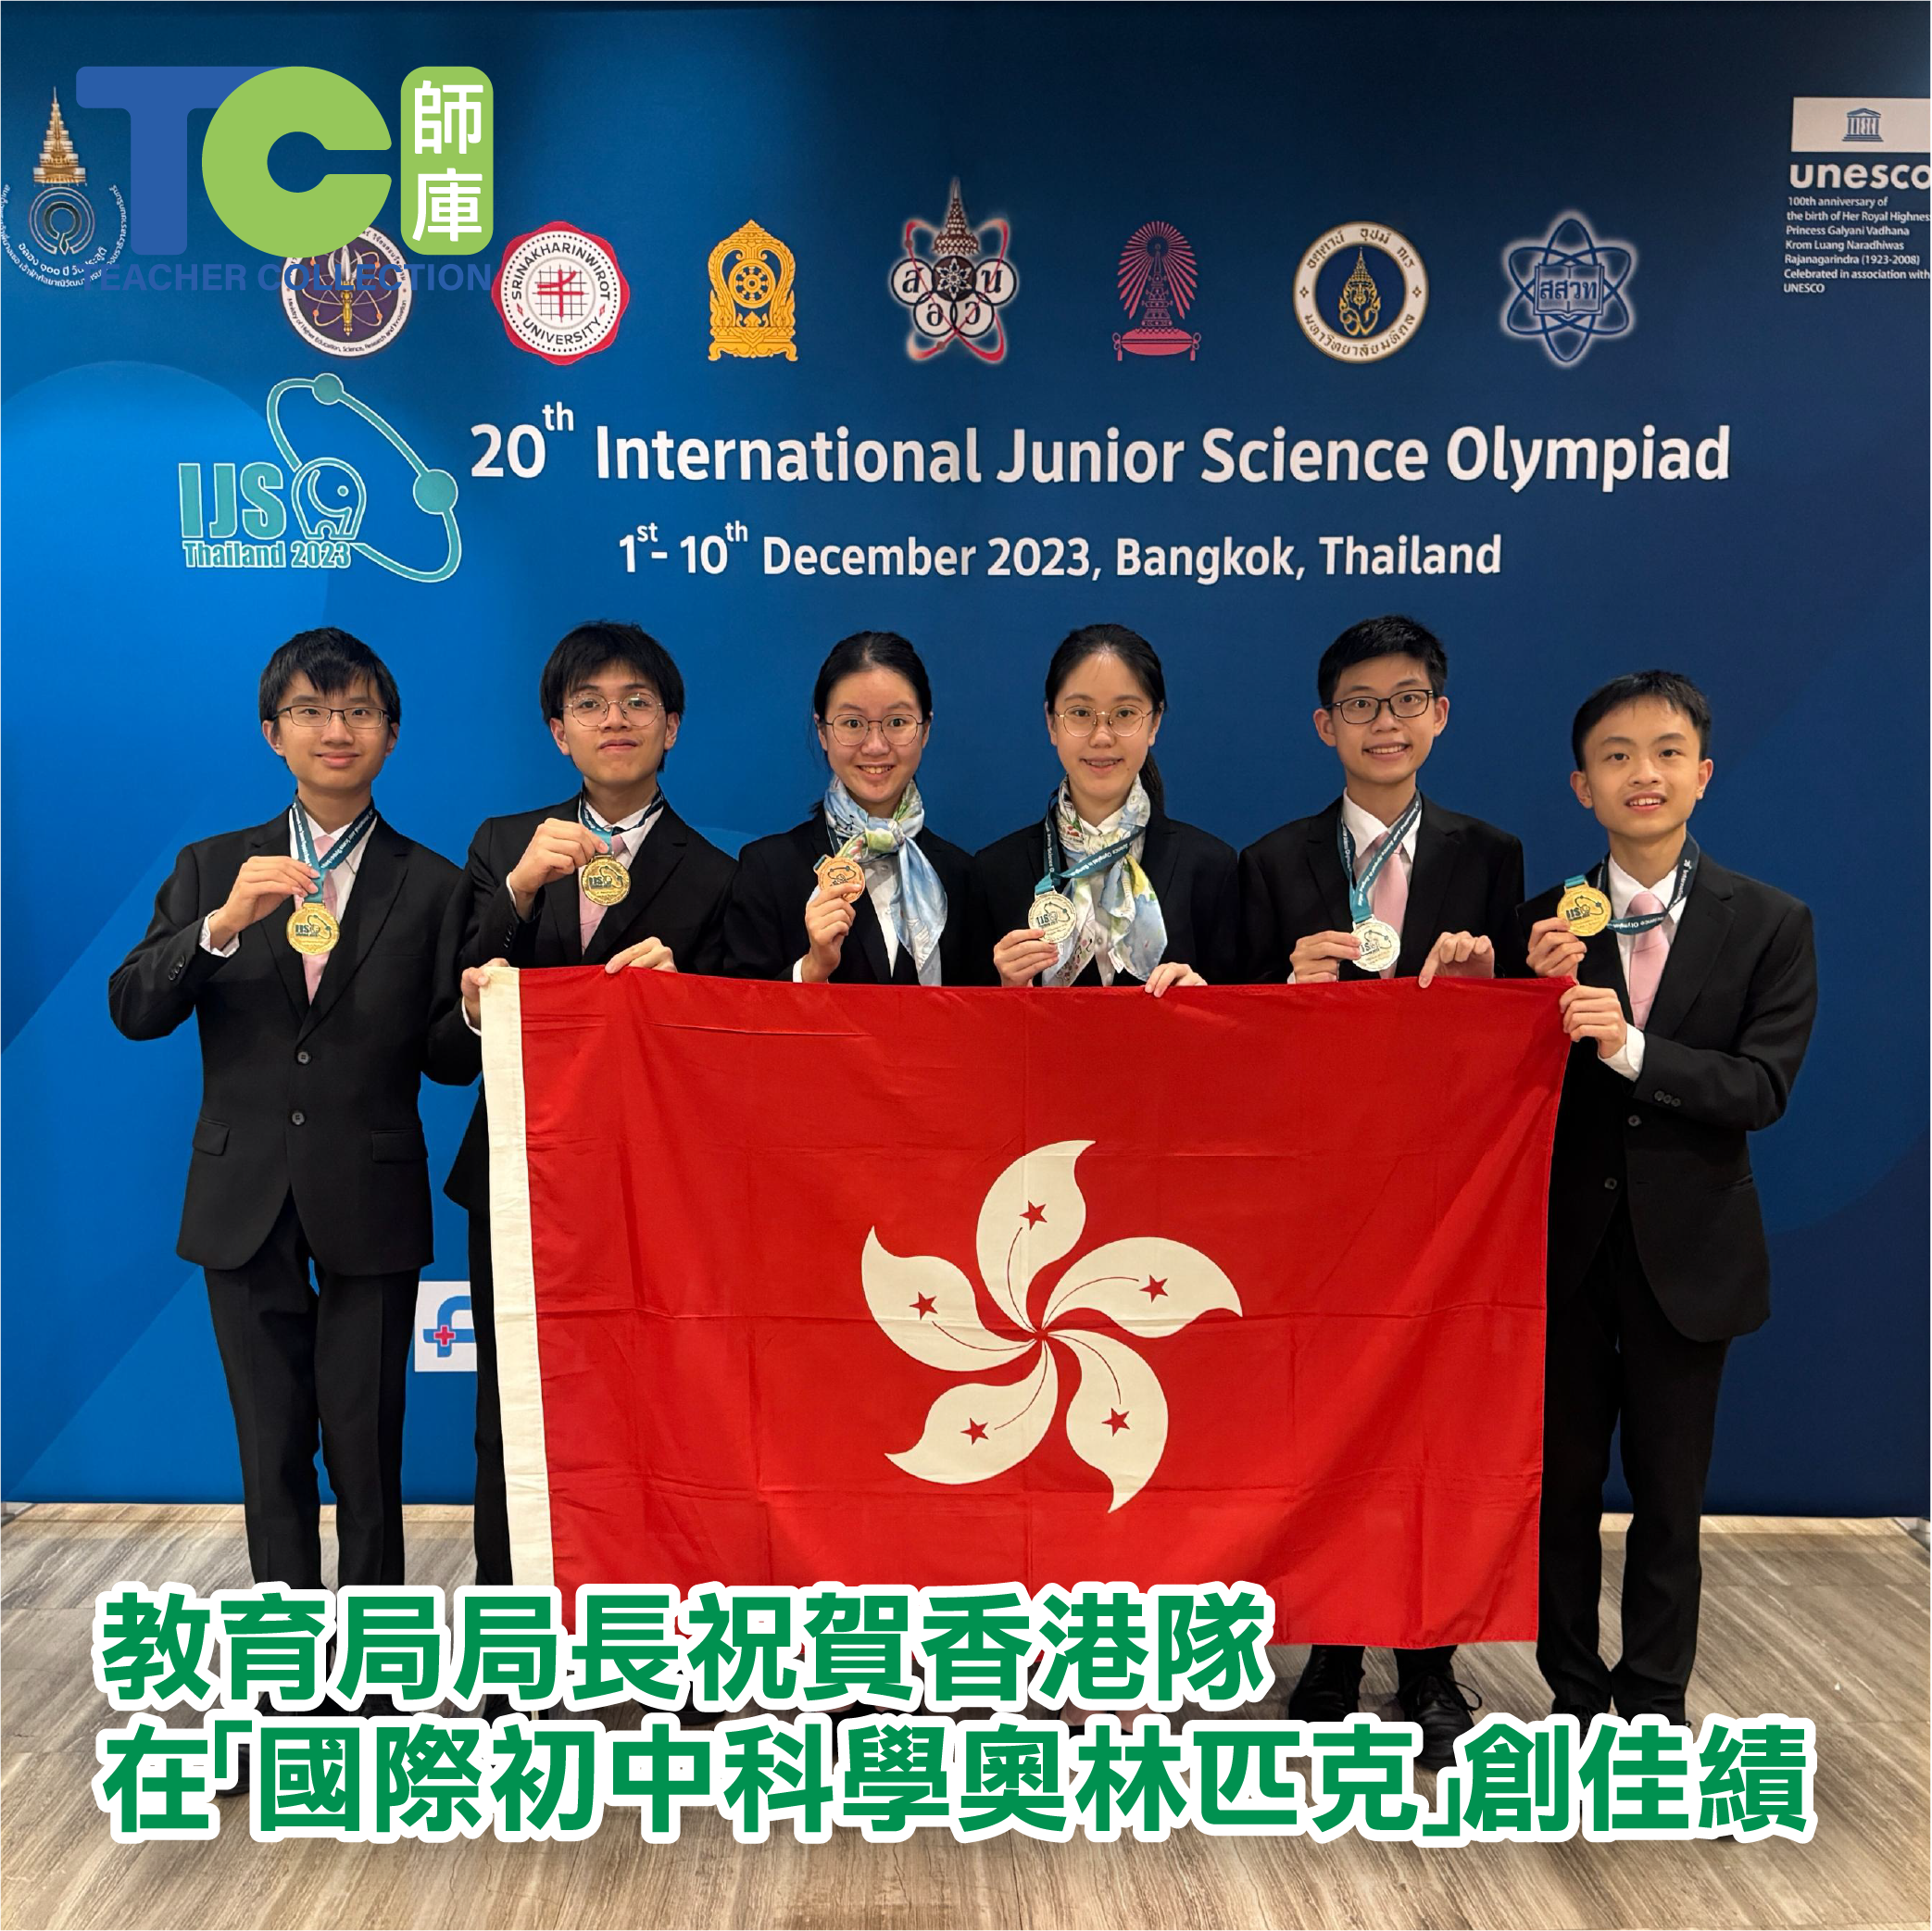 教育局局長祝賀香港隊在「國際初中科學奧林匹克」創佳績